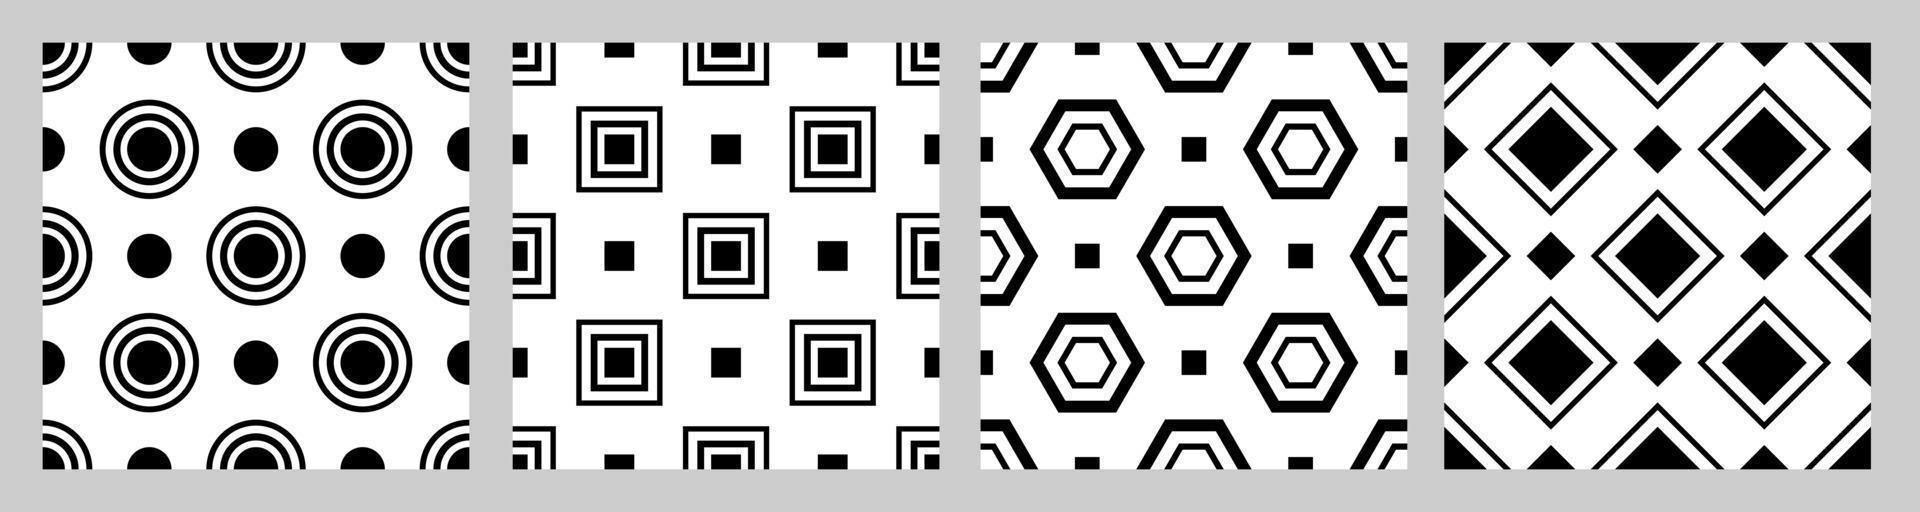 set geometrische naadloze patroon met verspringende figuren. zwarte vormen op een witte achtergrond. vierkant, cirkel, vijfhoek, ruit vector